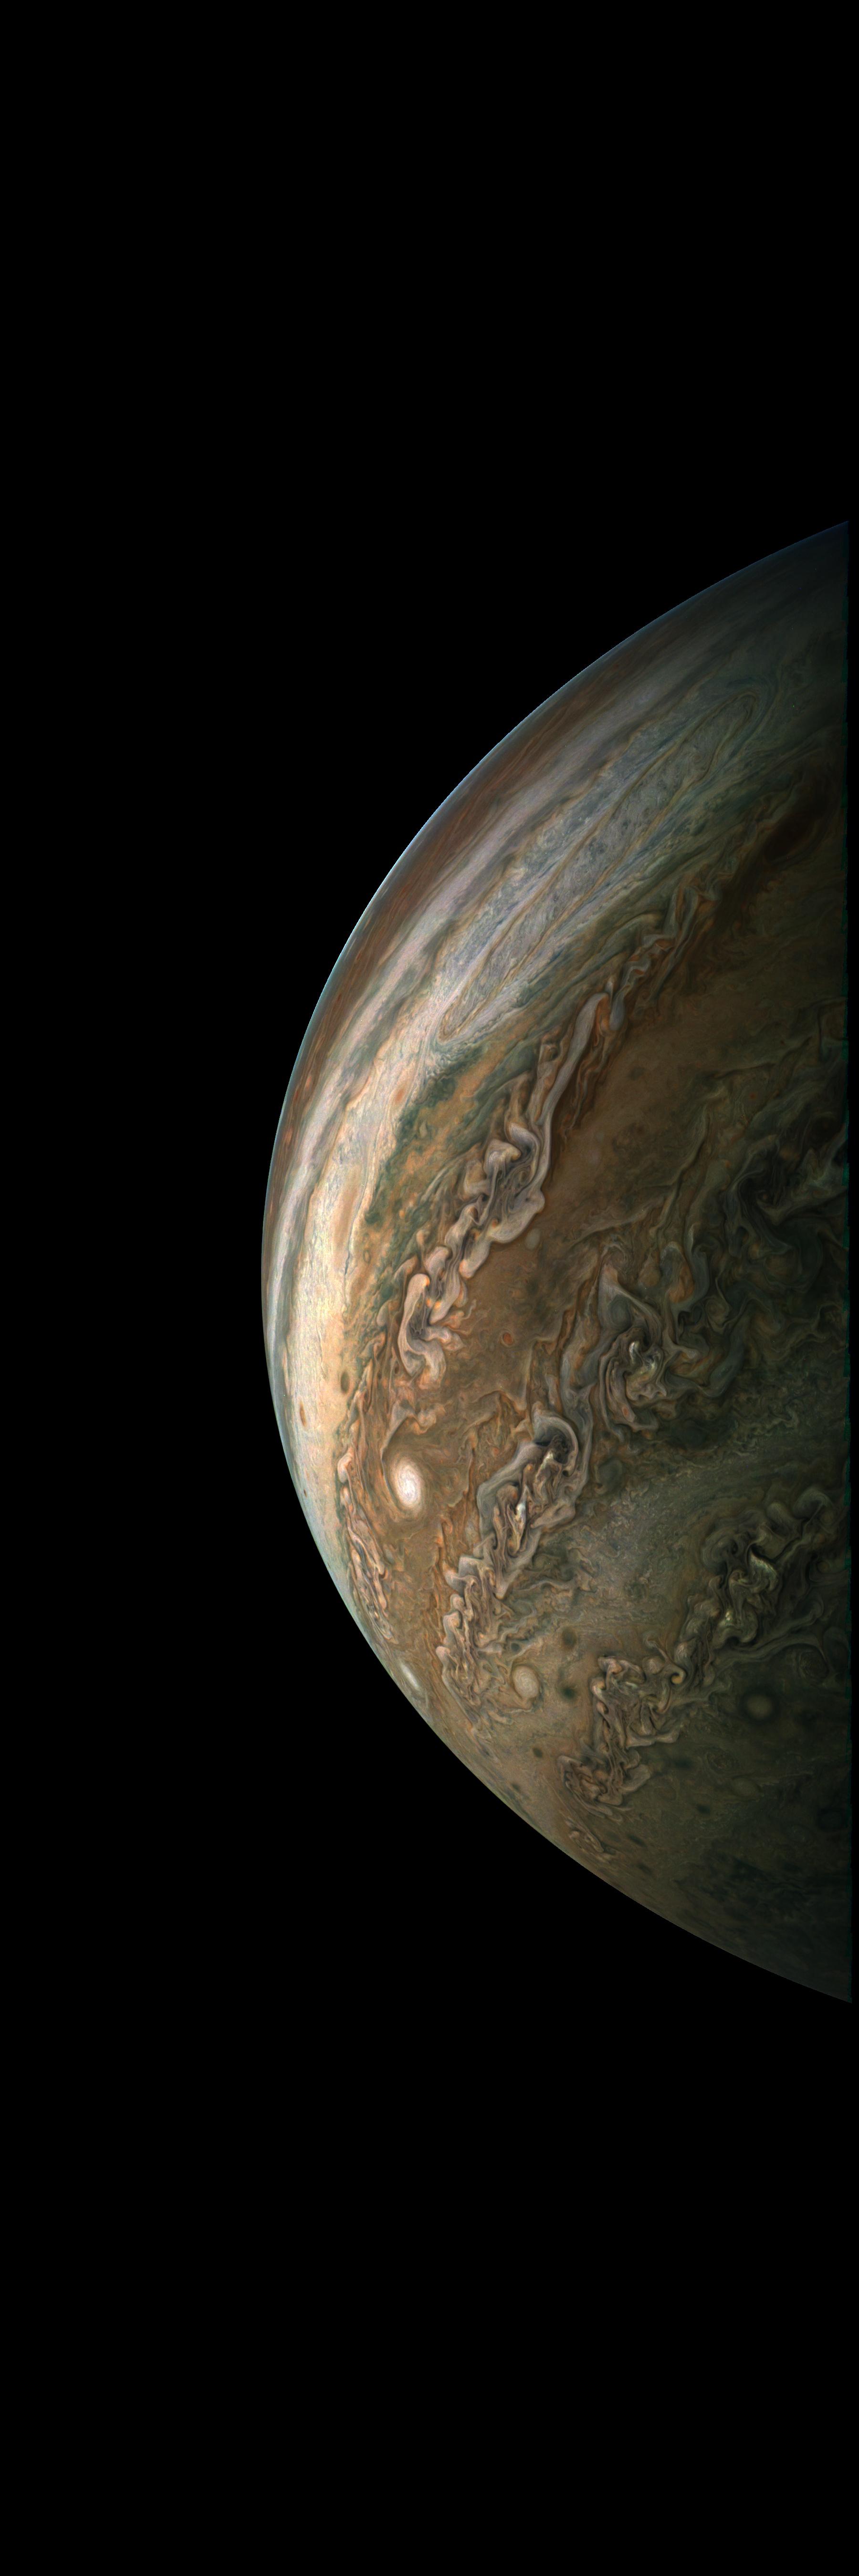 18 02 10 最新高解像度画像 木星の南半球 Nasaの木星探査機ジュノーの最新画像と情報を翻訳